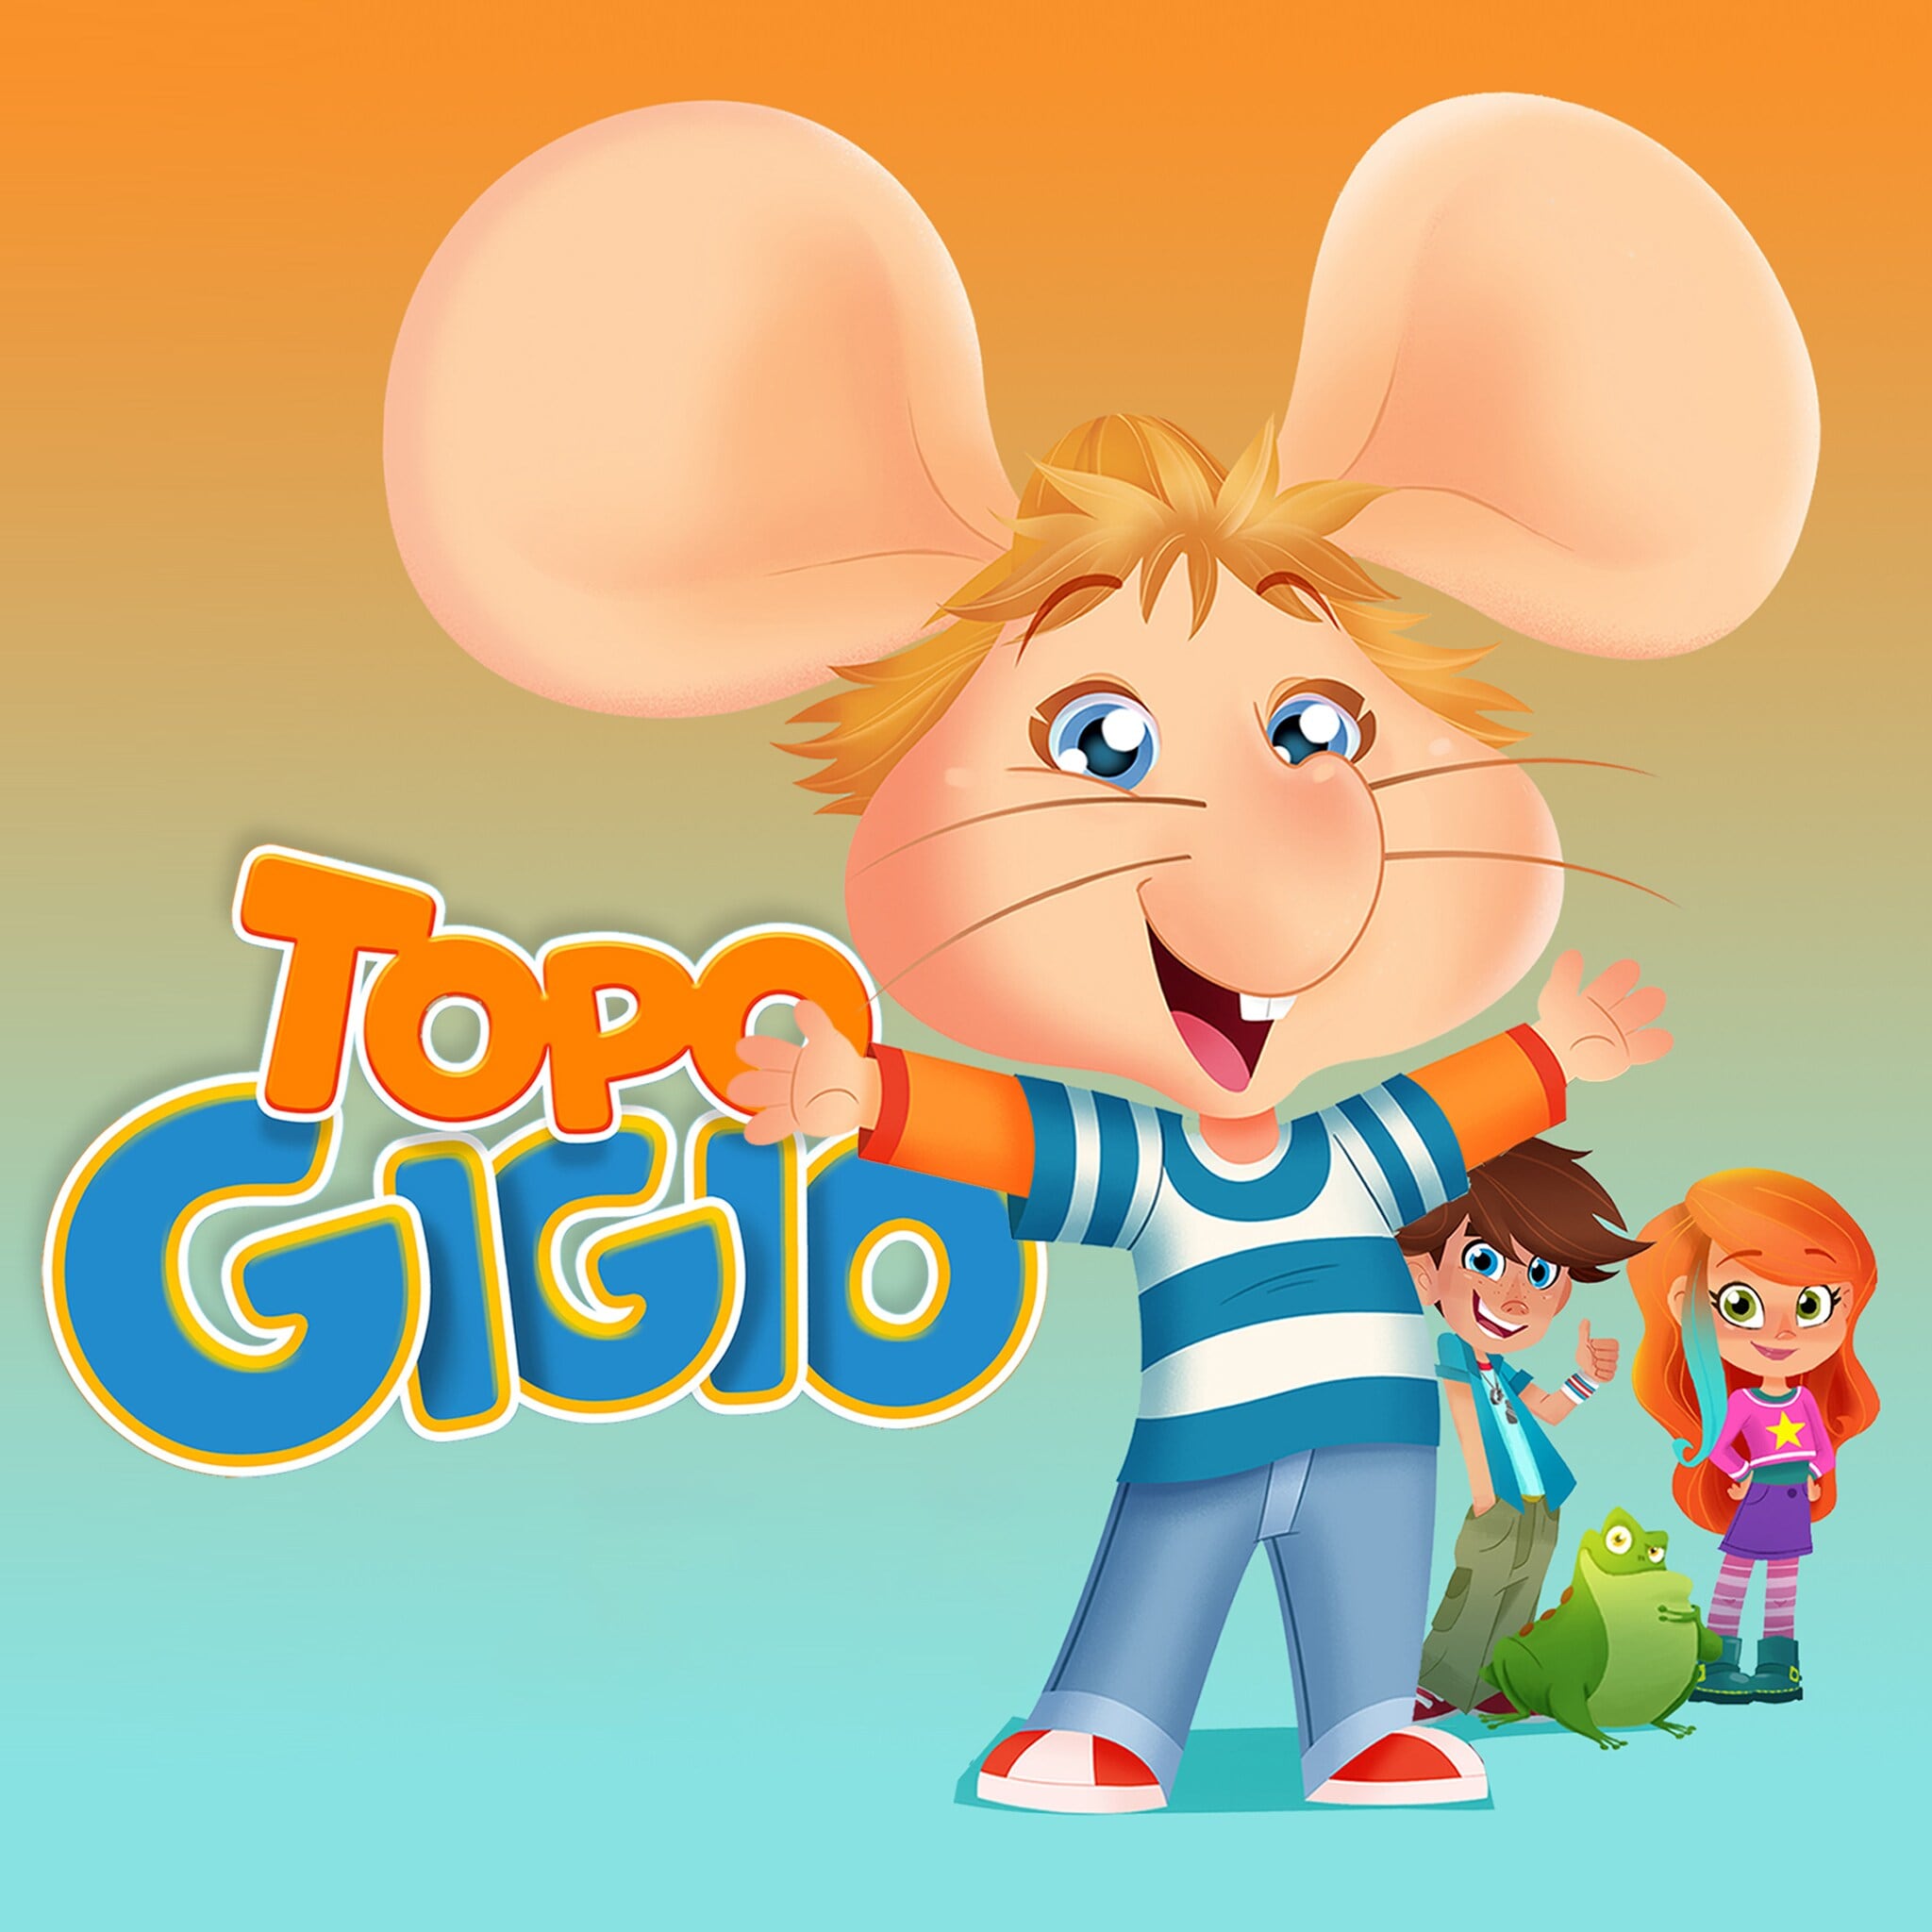 Vai a 'Topo Gigio' per bambini con difficoltà visive